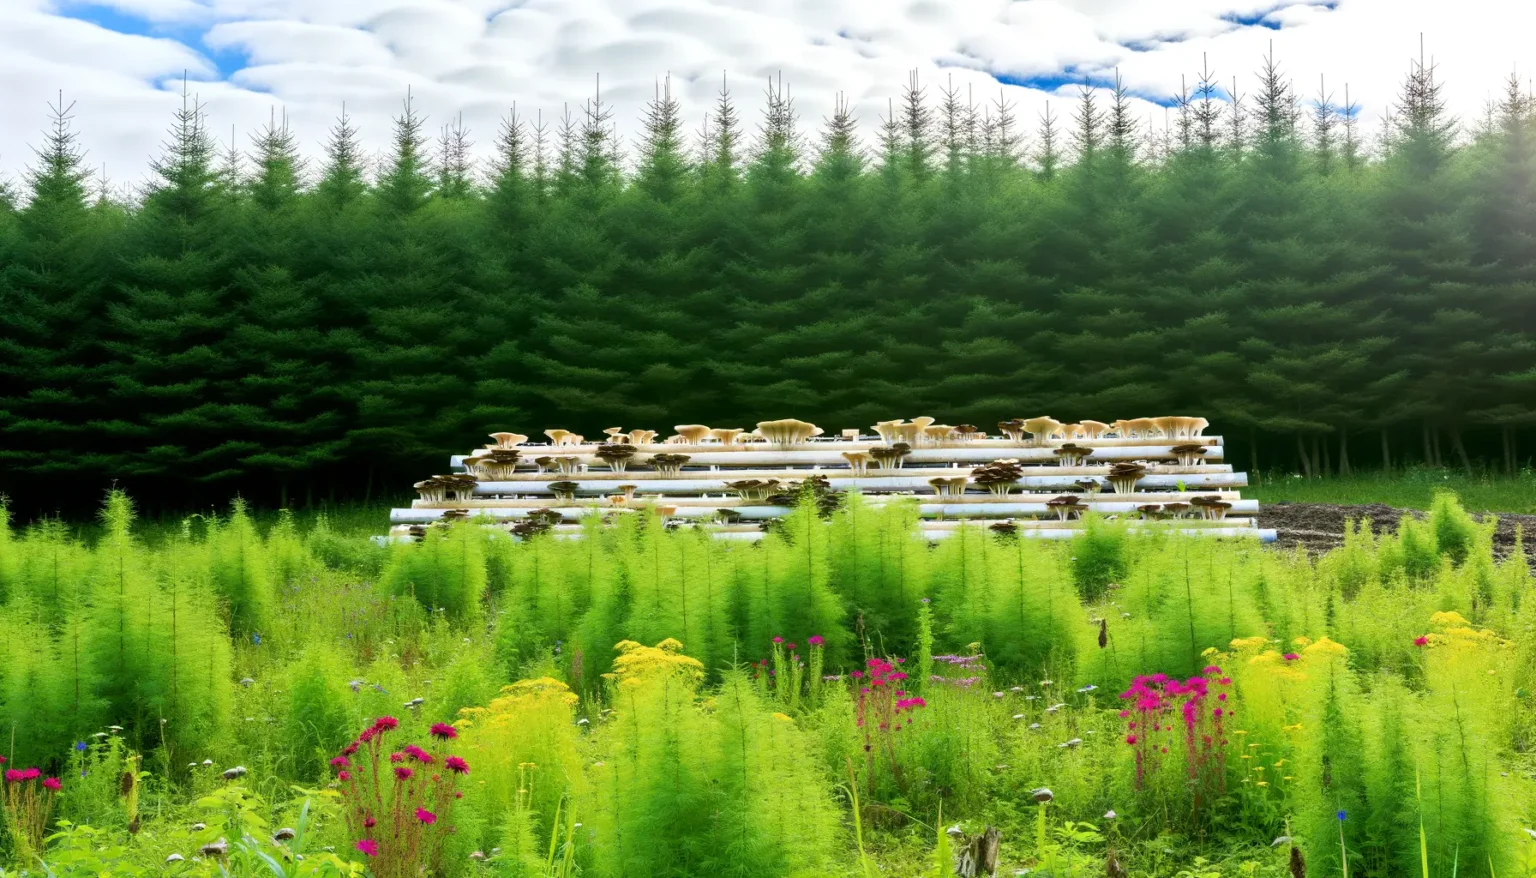 Ein Bild von mehrstufigen Pilzkulturen auf Regalen im Freien mit einem lebhaften Hintergrund aus grünen Bäumen und Wildblumen im Vordergrund.